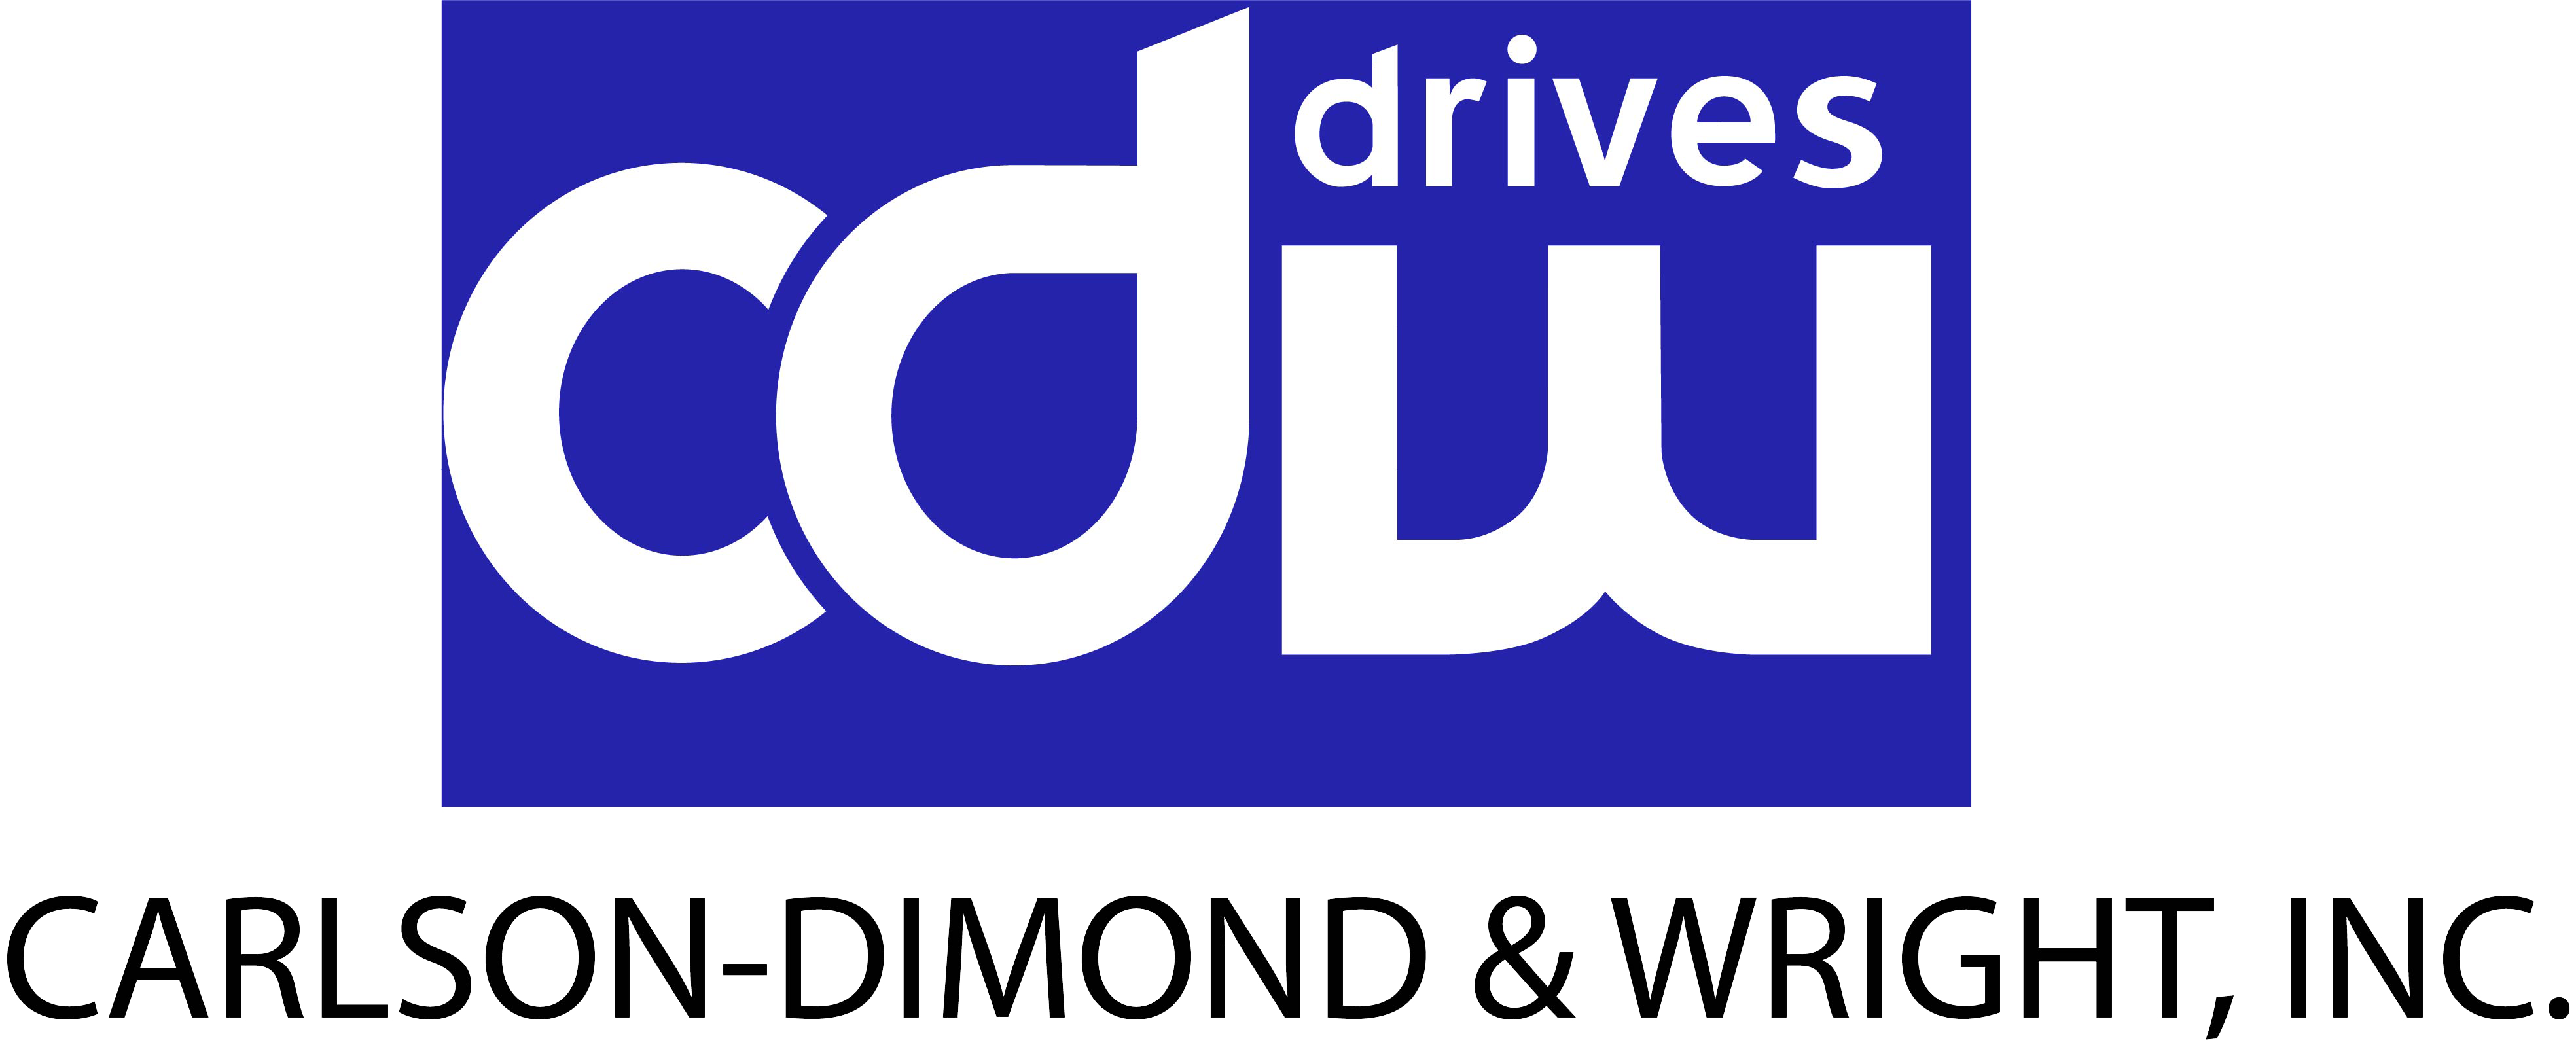 CDW Drives